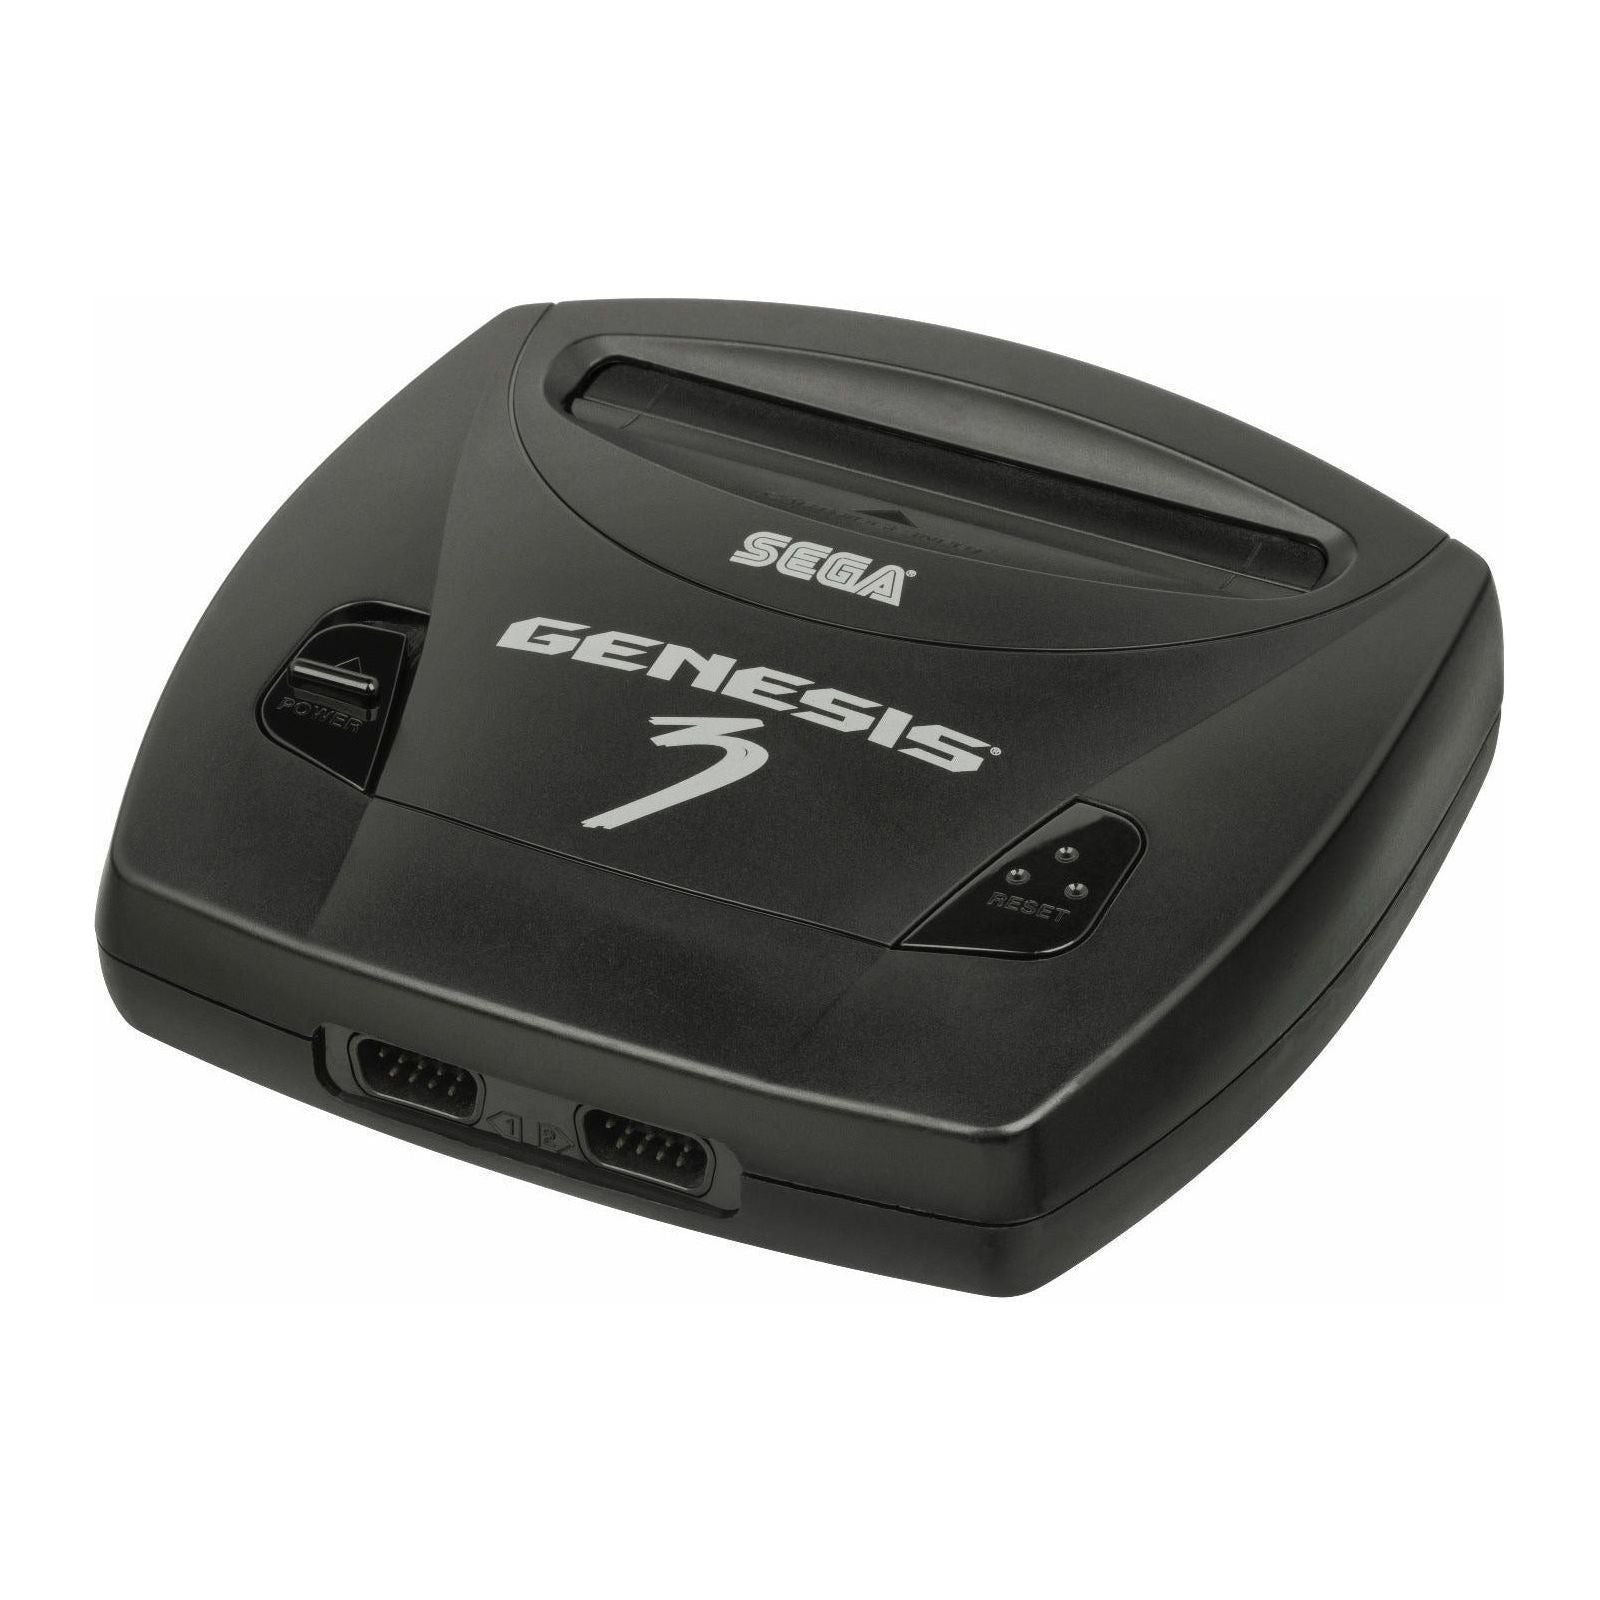 Système Sega Genesis modèle 3